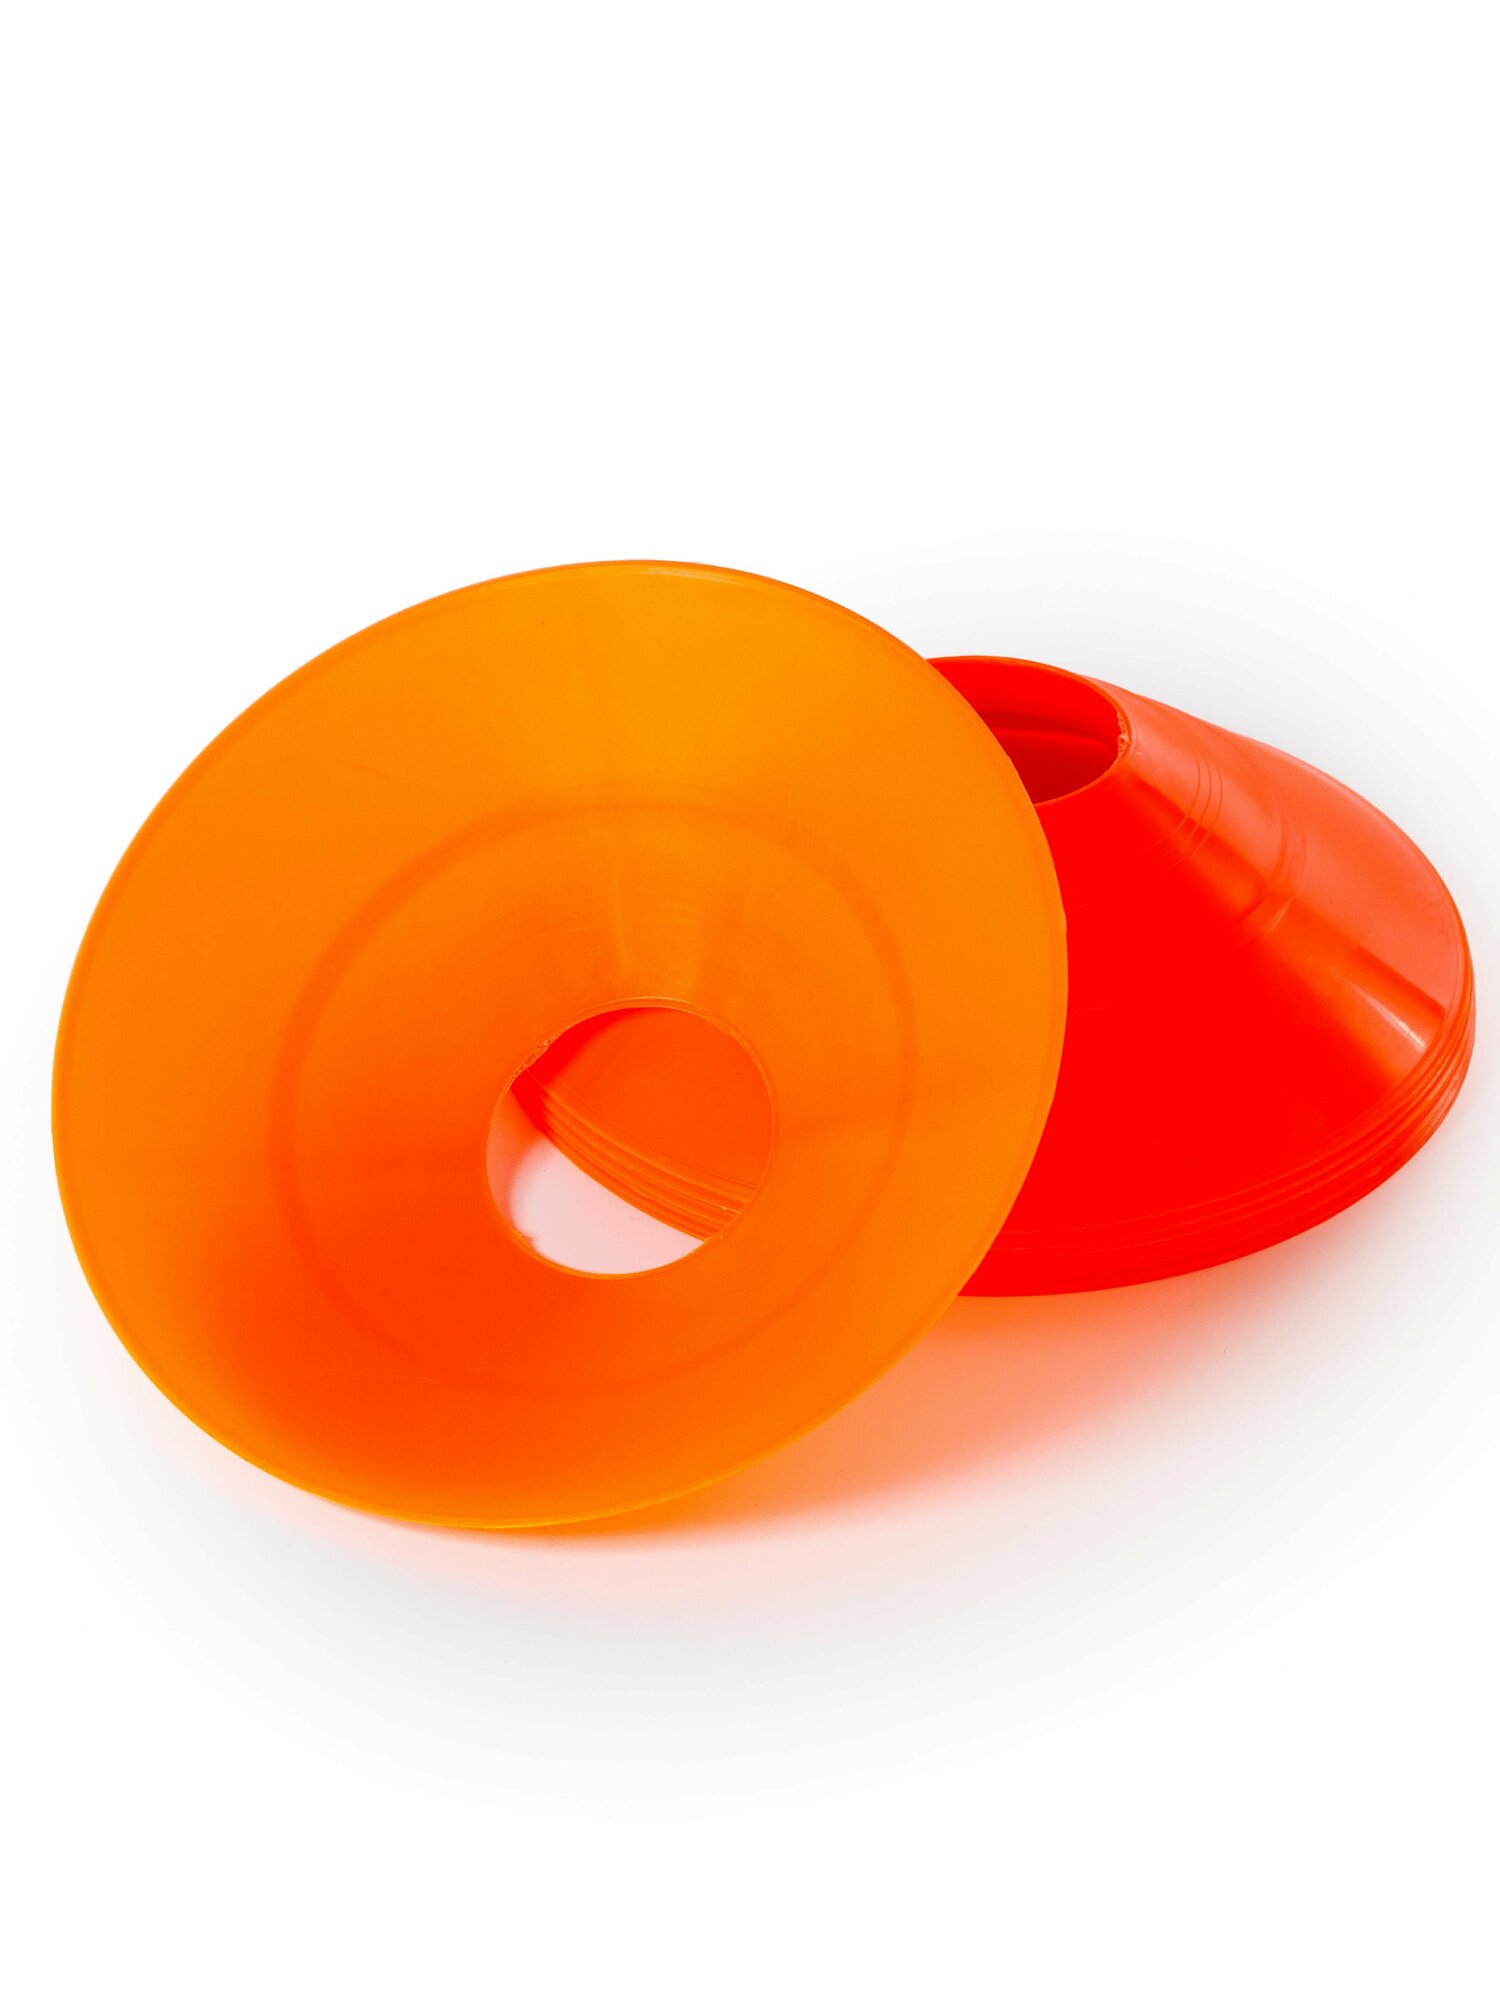 Конусы спортивные Mr. Fox 10 штук высота 5 см, диаметр 19 см, фишки для футбола, оранжевые